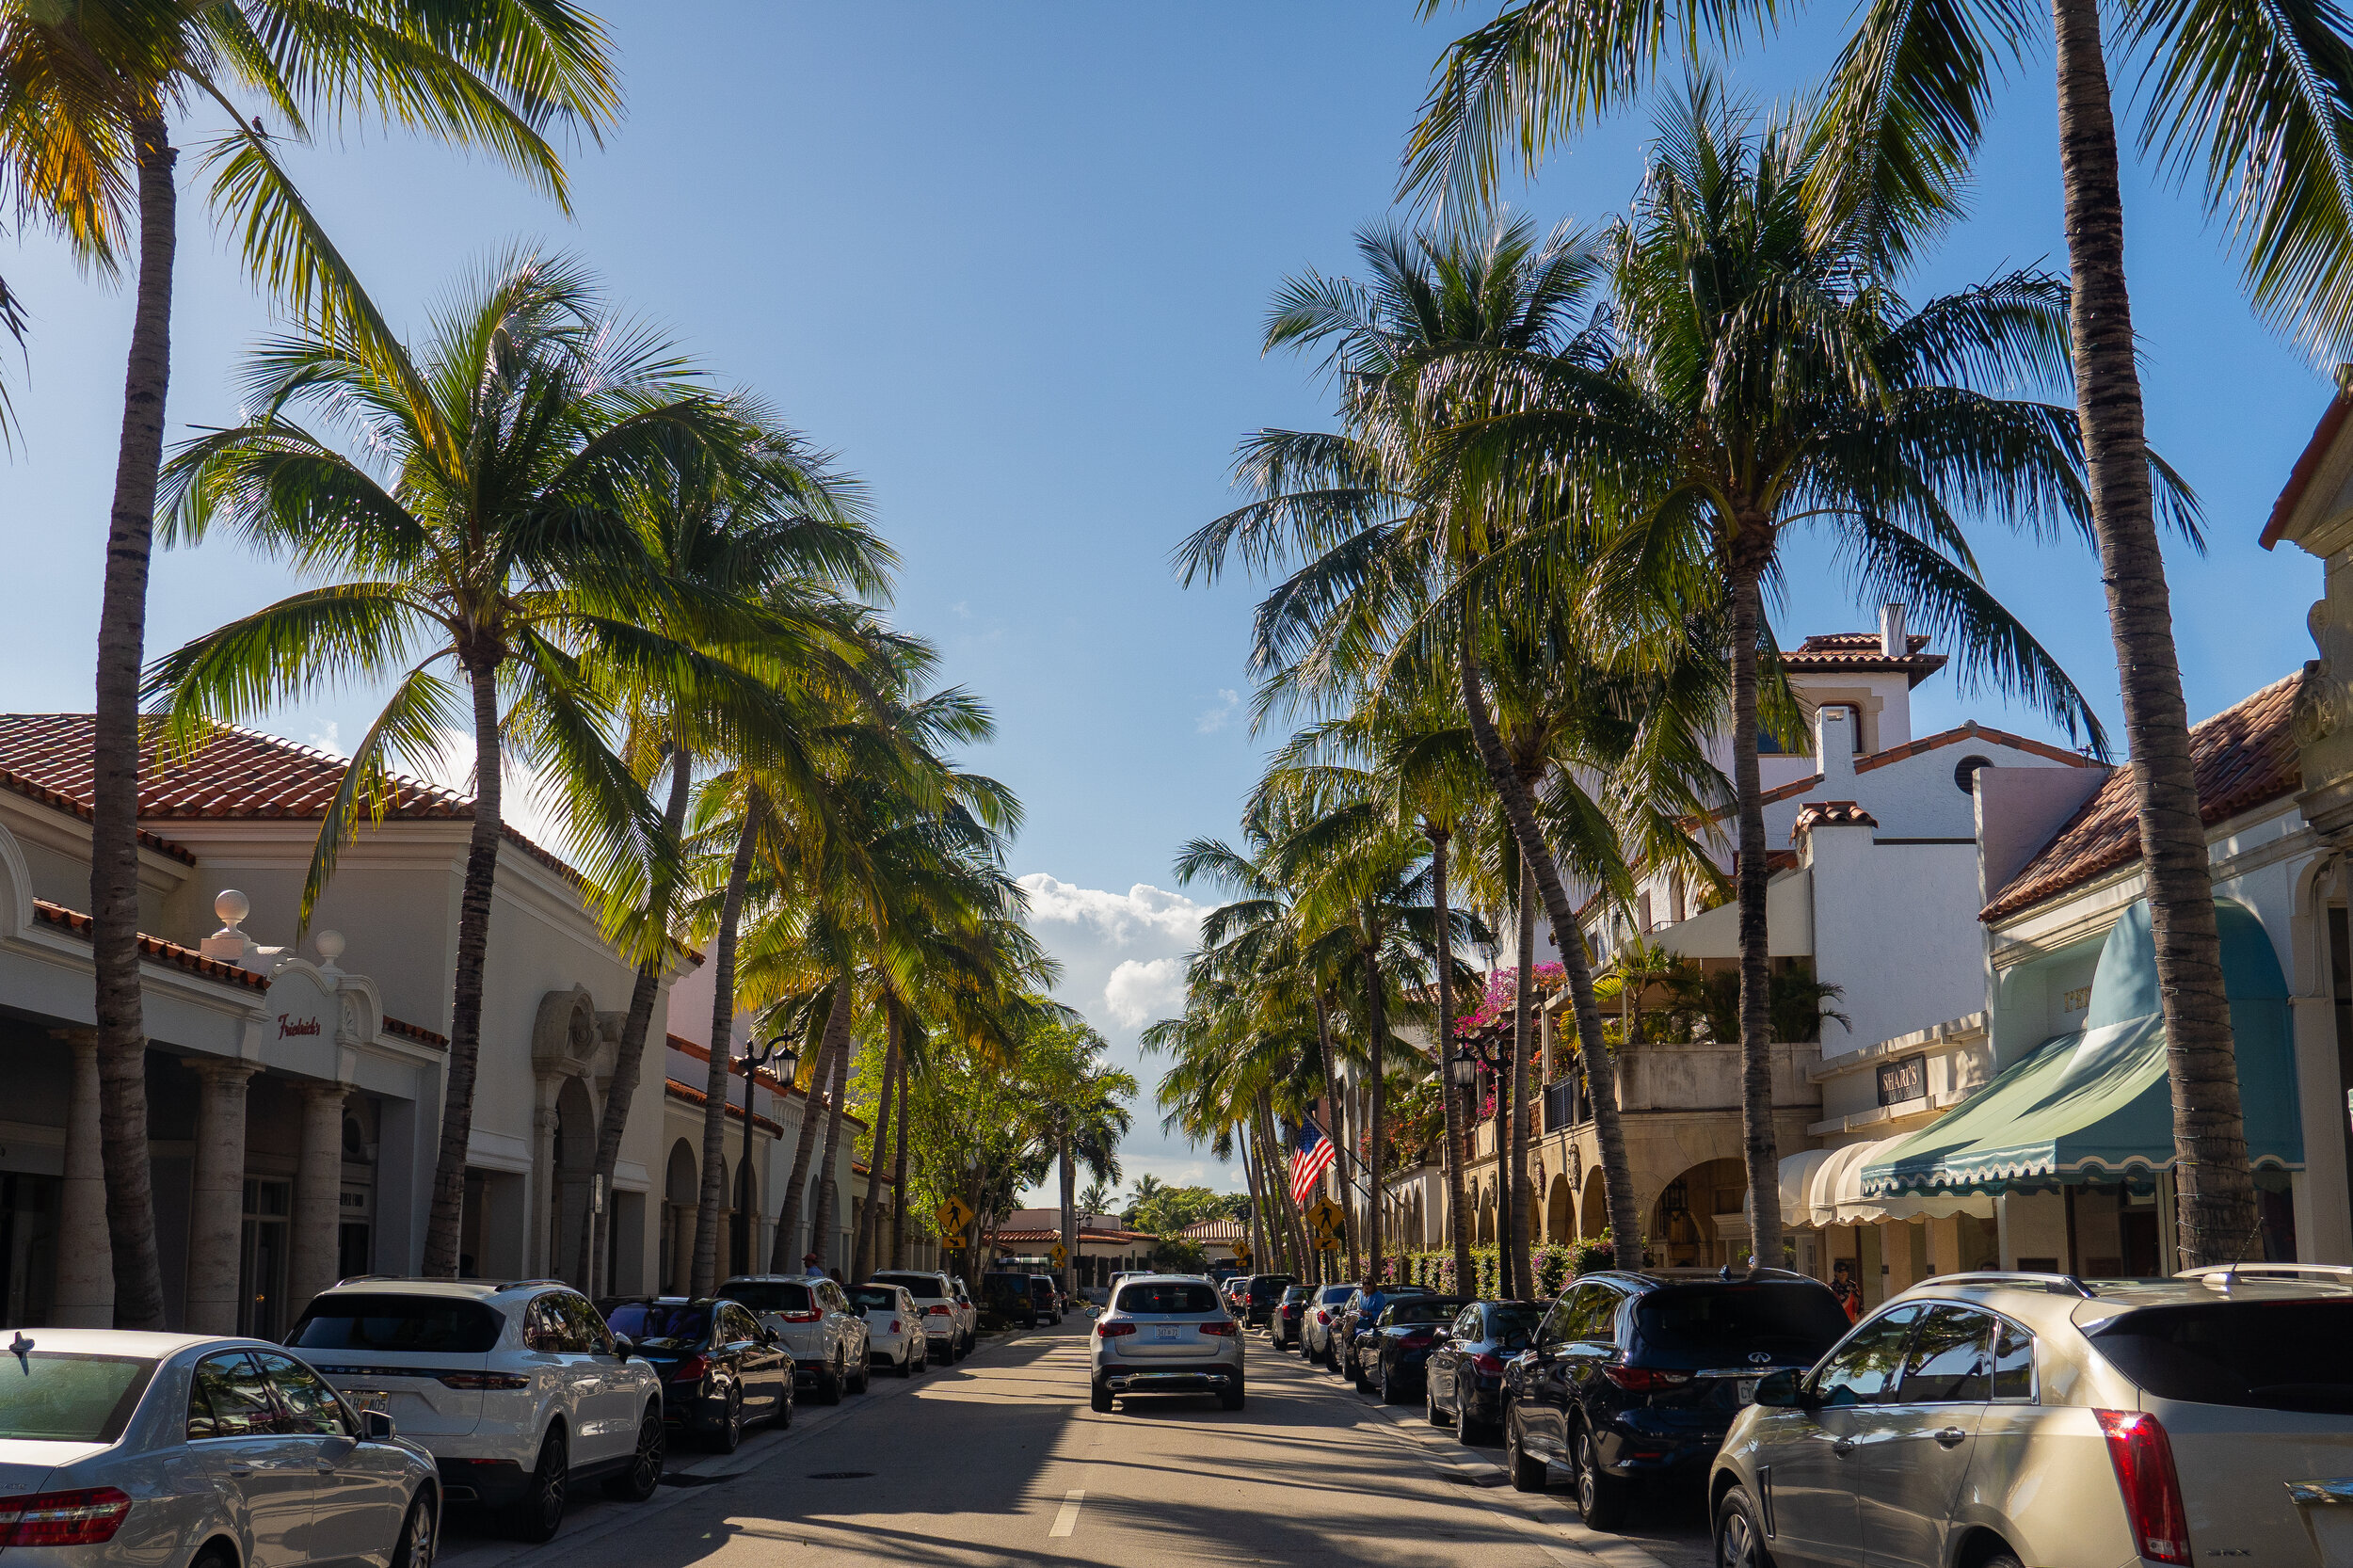  South Ocean Boulevard in Palm Beach.  